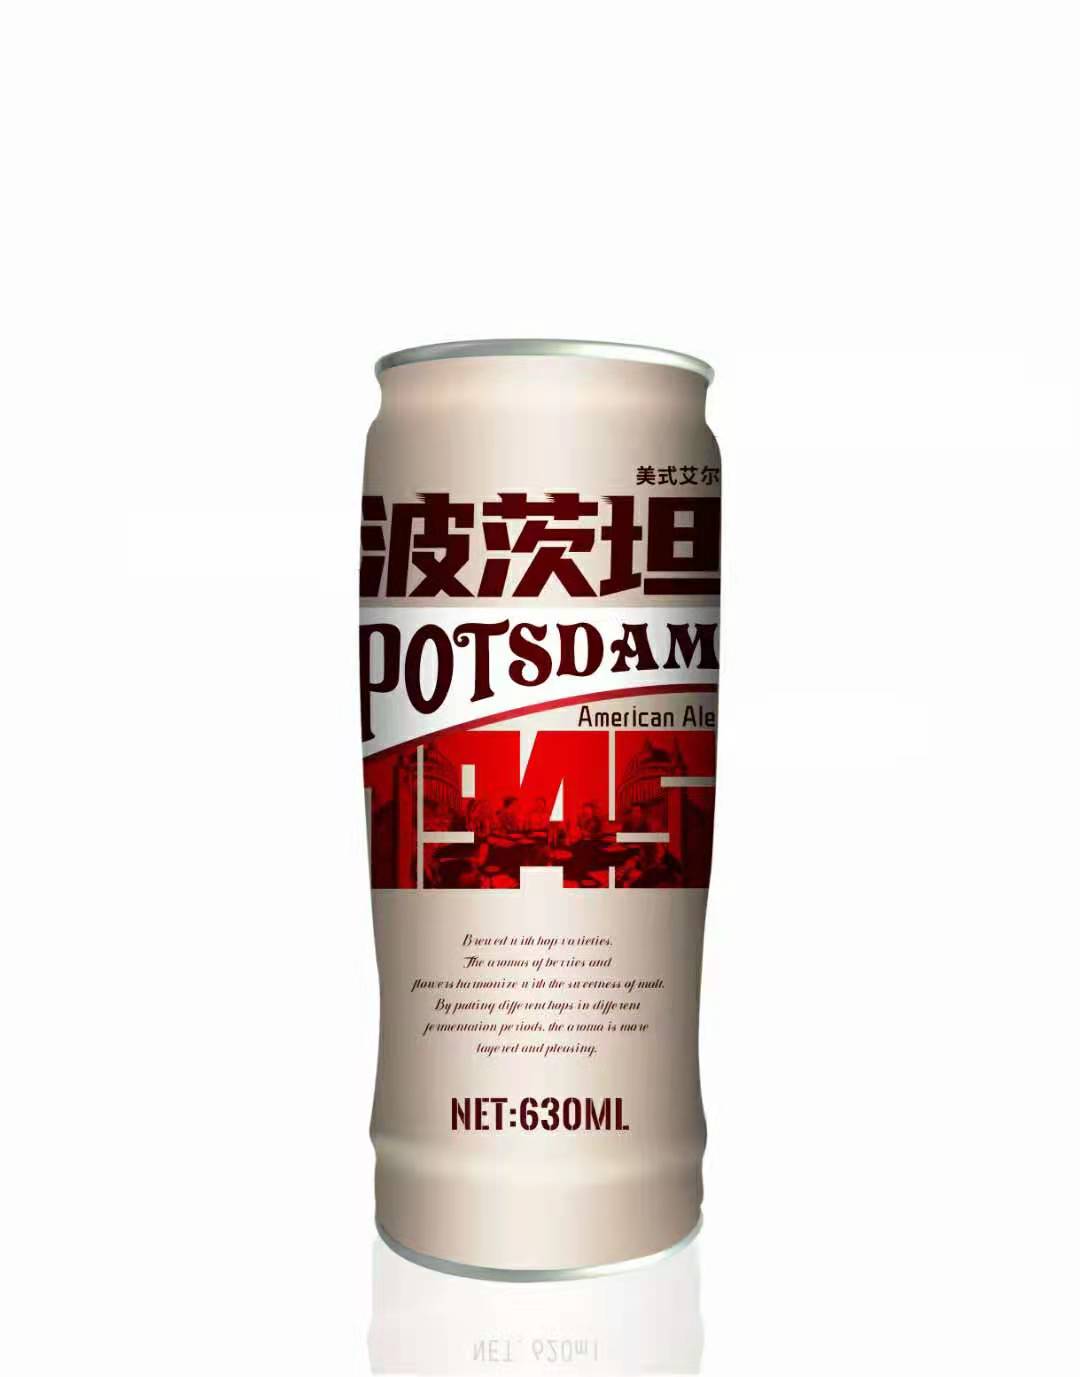 波茨坦美式艾尔啤酒630ml*12罐